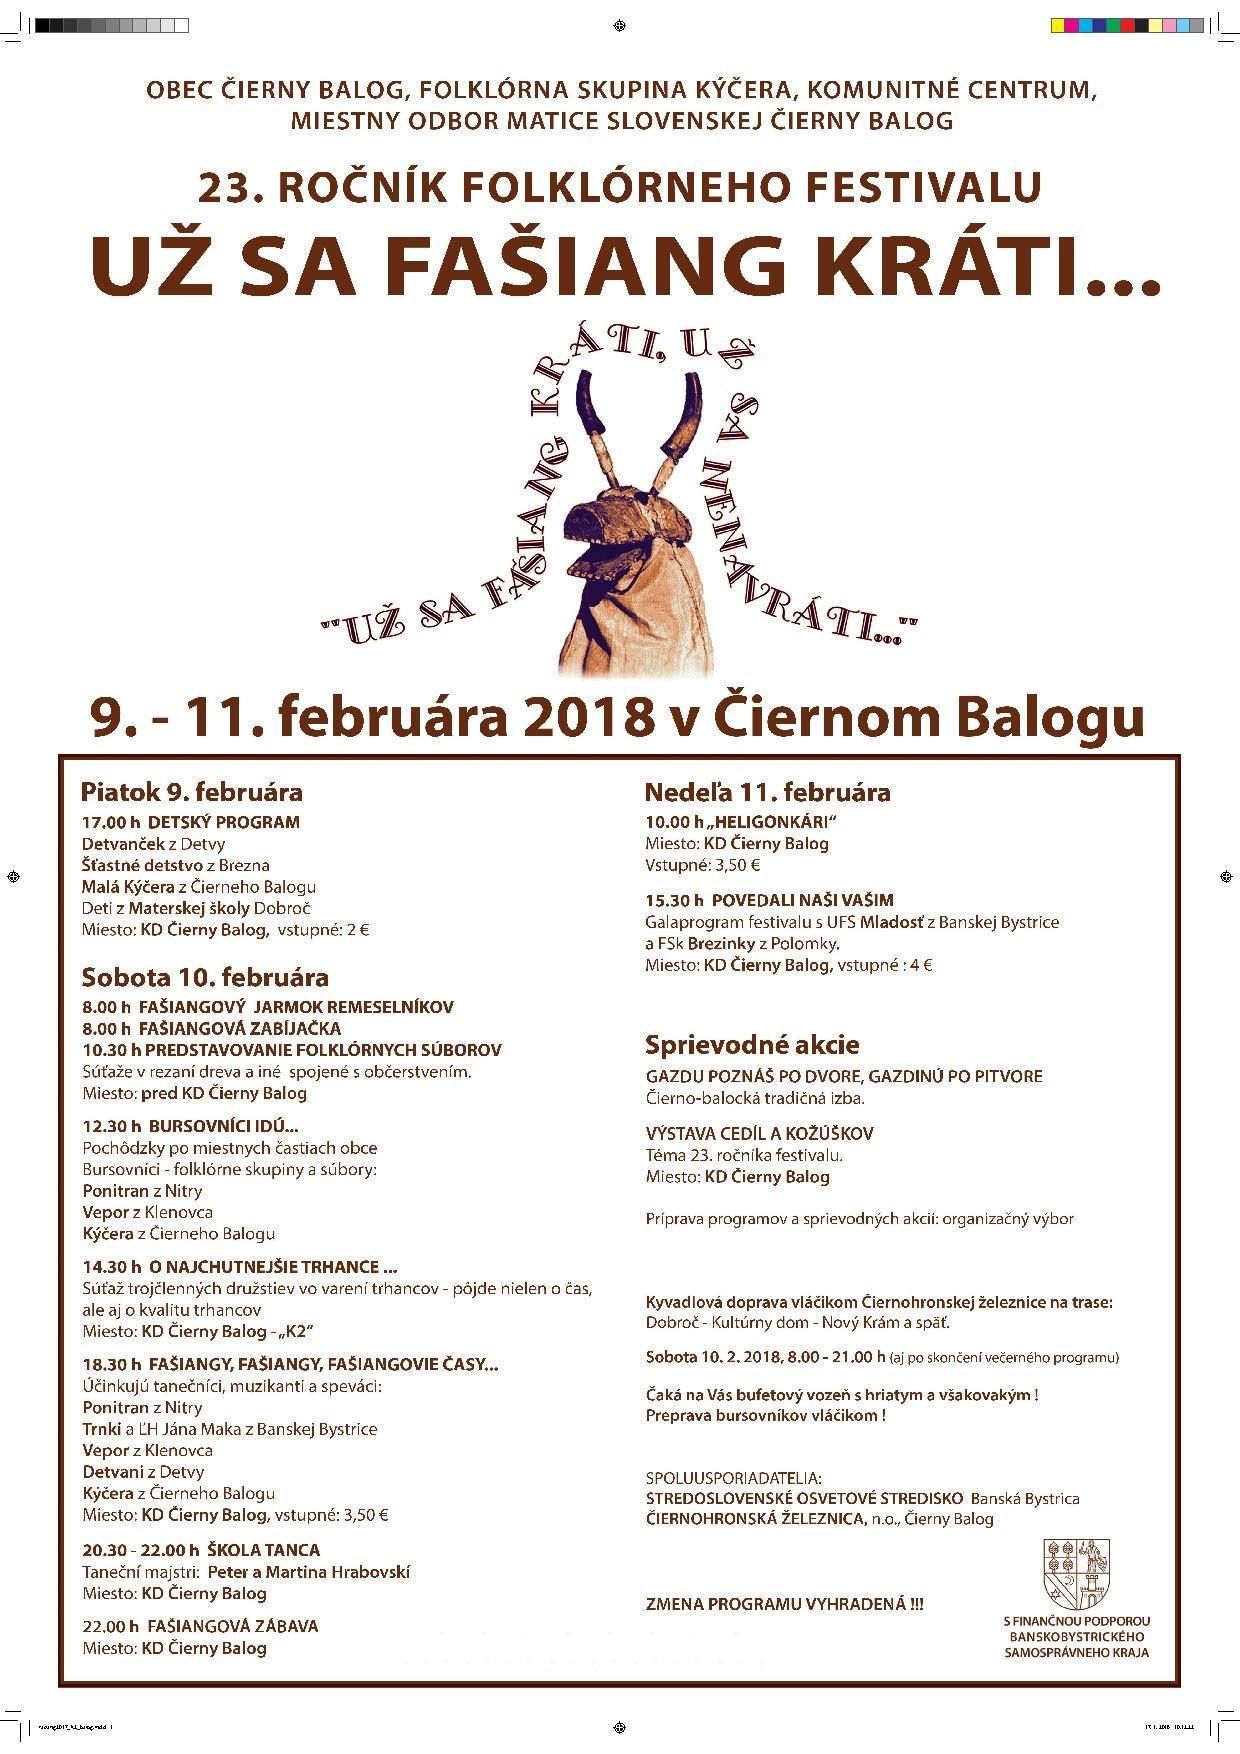 U sa faiang krti ... ierny Balog 2018 - 23. ronk folklrneho festivalu 